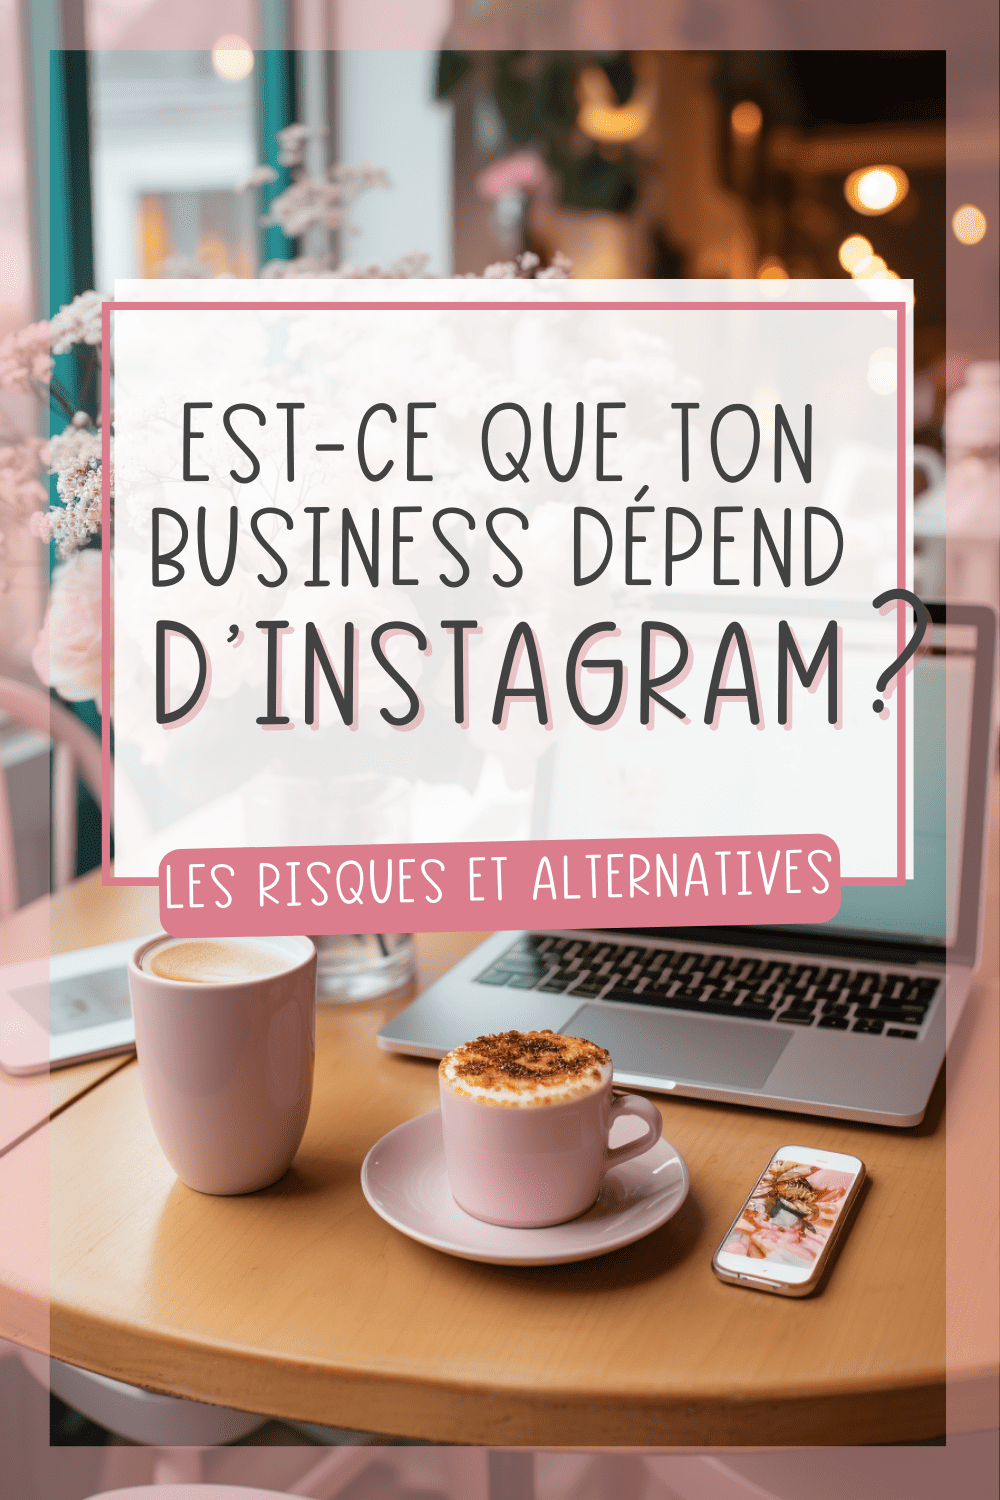 Instagram est-il indispensable pour un business ?